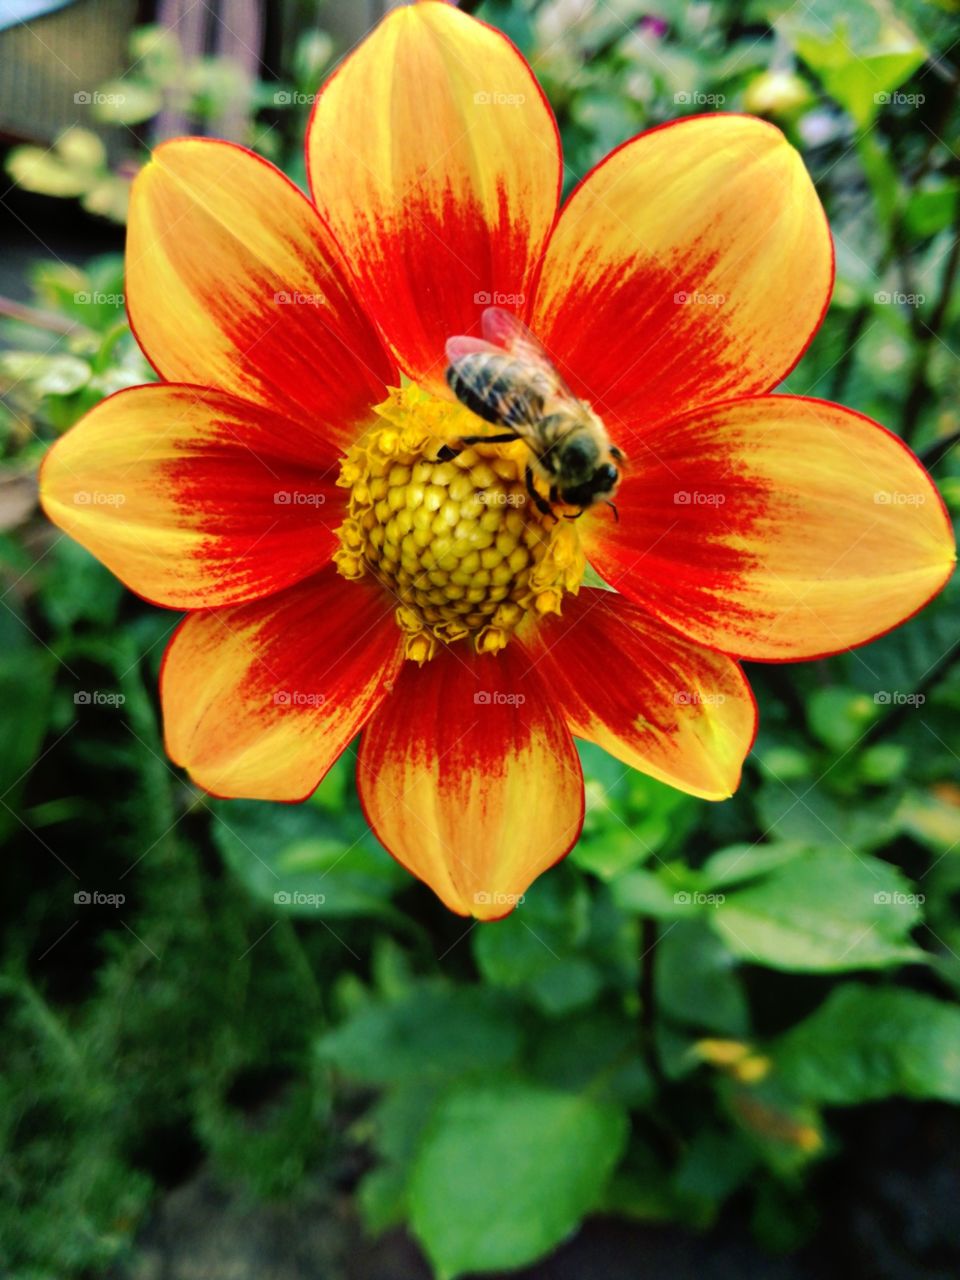 Beautiful bee pollinating.